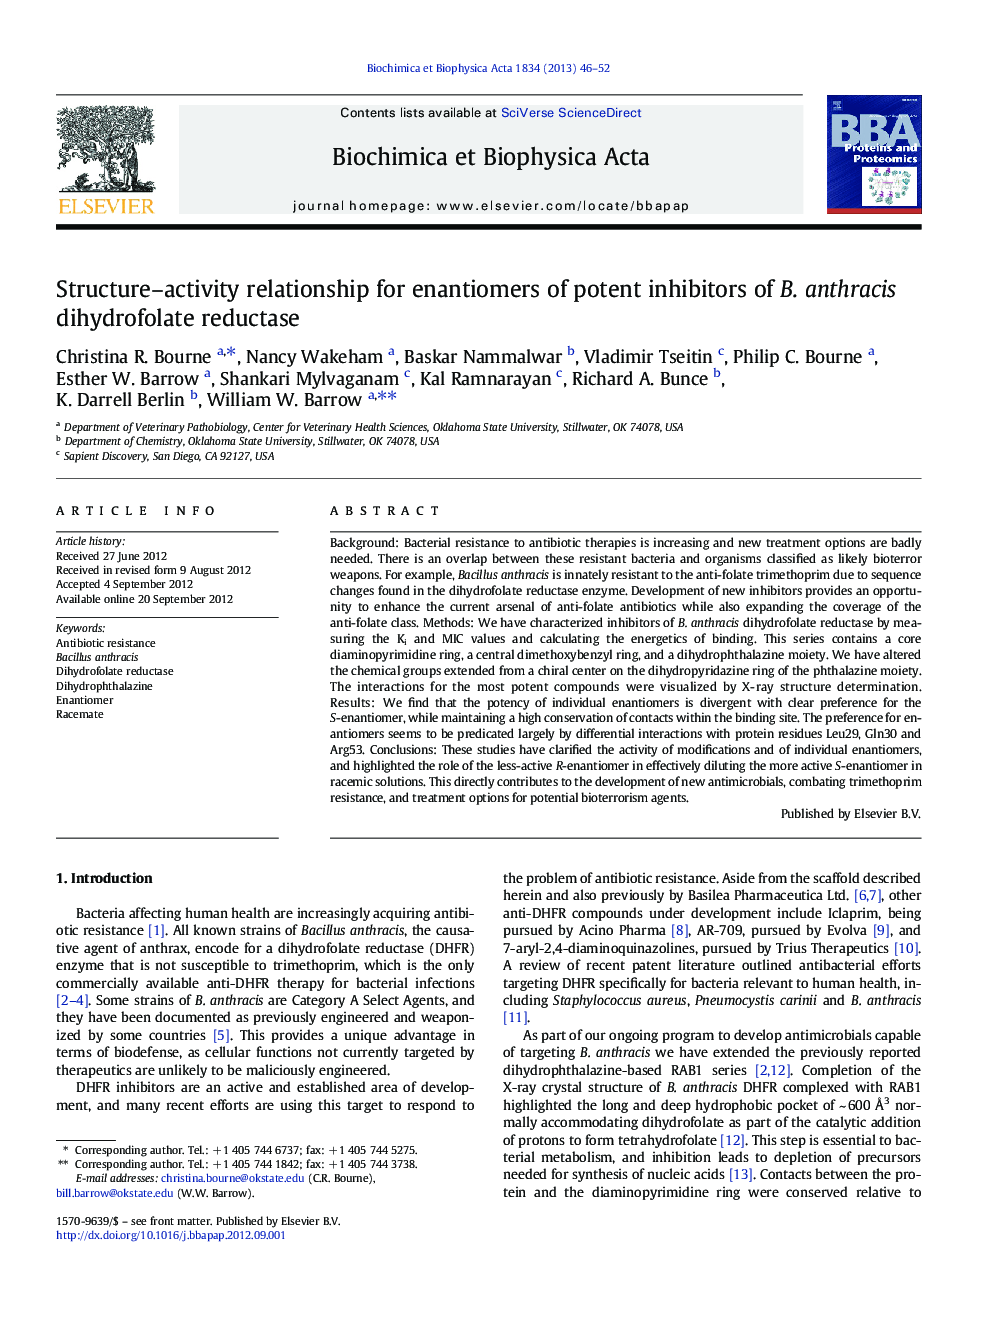 رابطه فعالیت ساختاری و فعالیت برای آنتی باکتری های مهار کننده قوی بتا آنتراسیس دی هیدروفلات ردوکتاز 